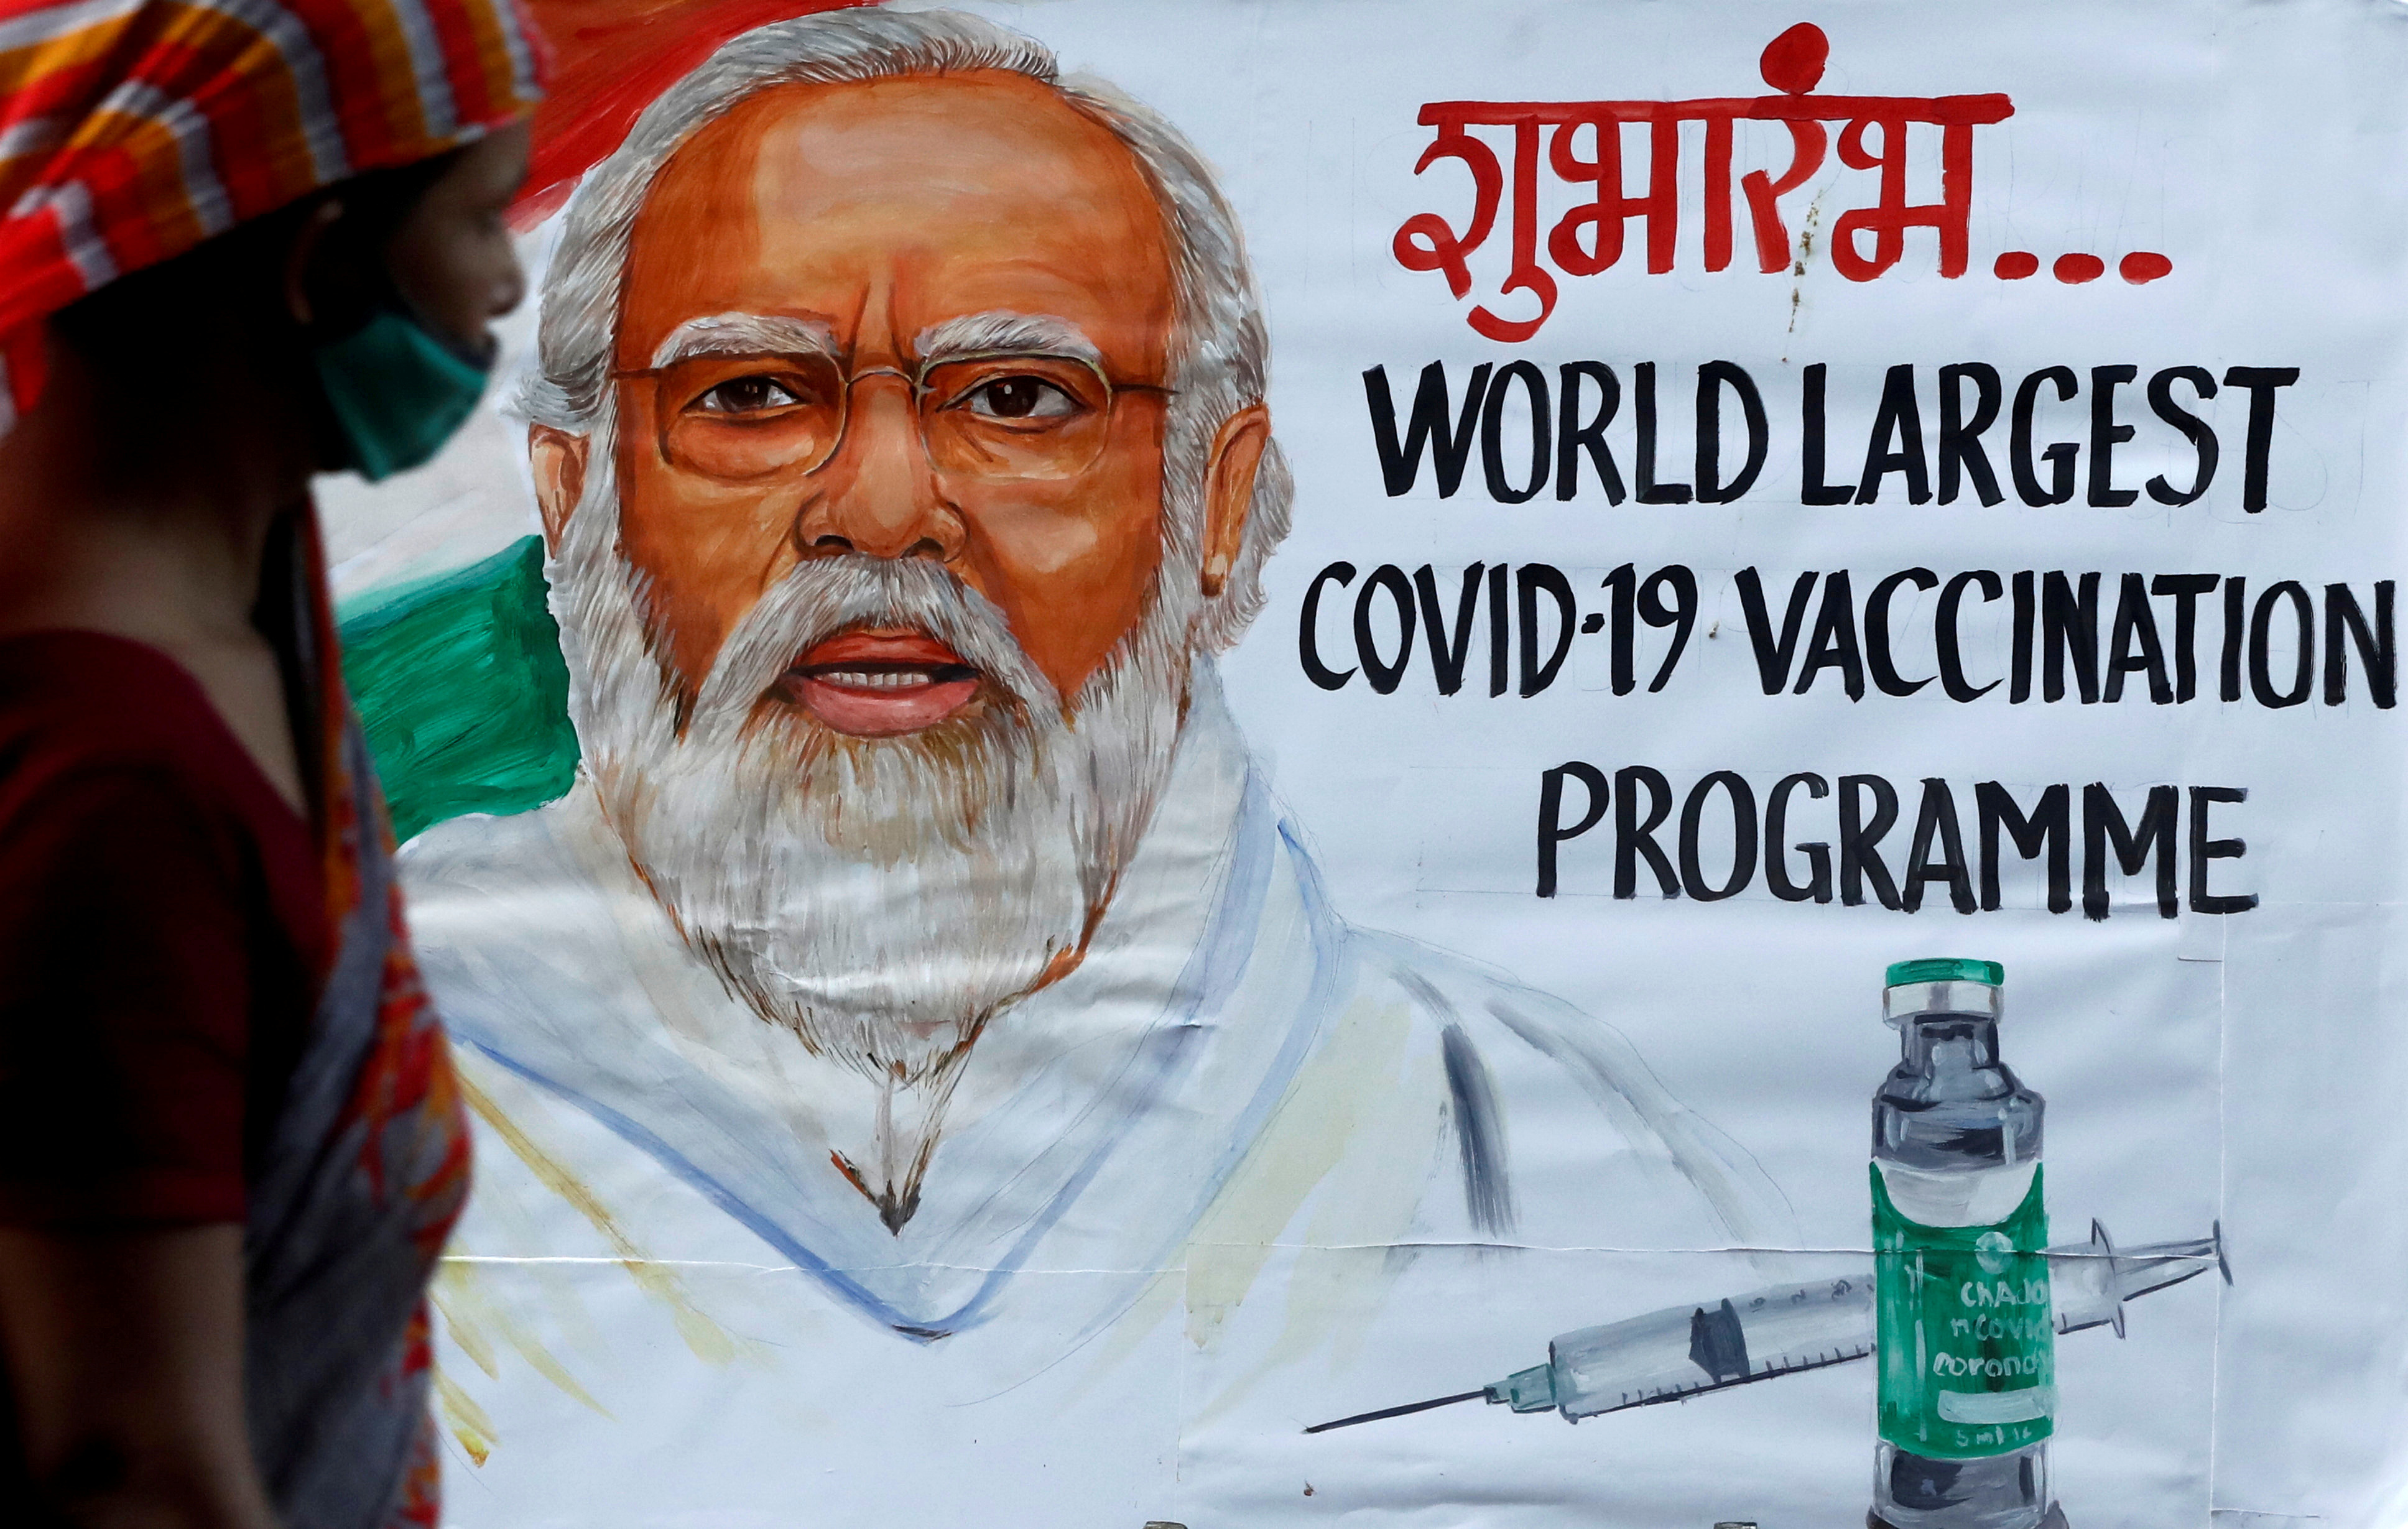 인구 13억 9000만 명인 인도가 ‘세계 최대 백신 접종 프로그램’이라면서 홍보하는 벽보